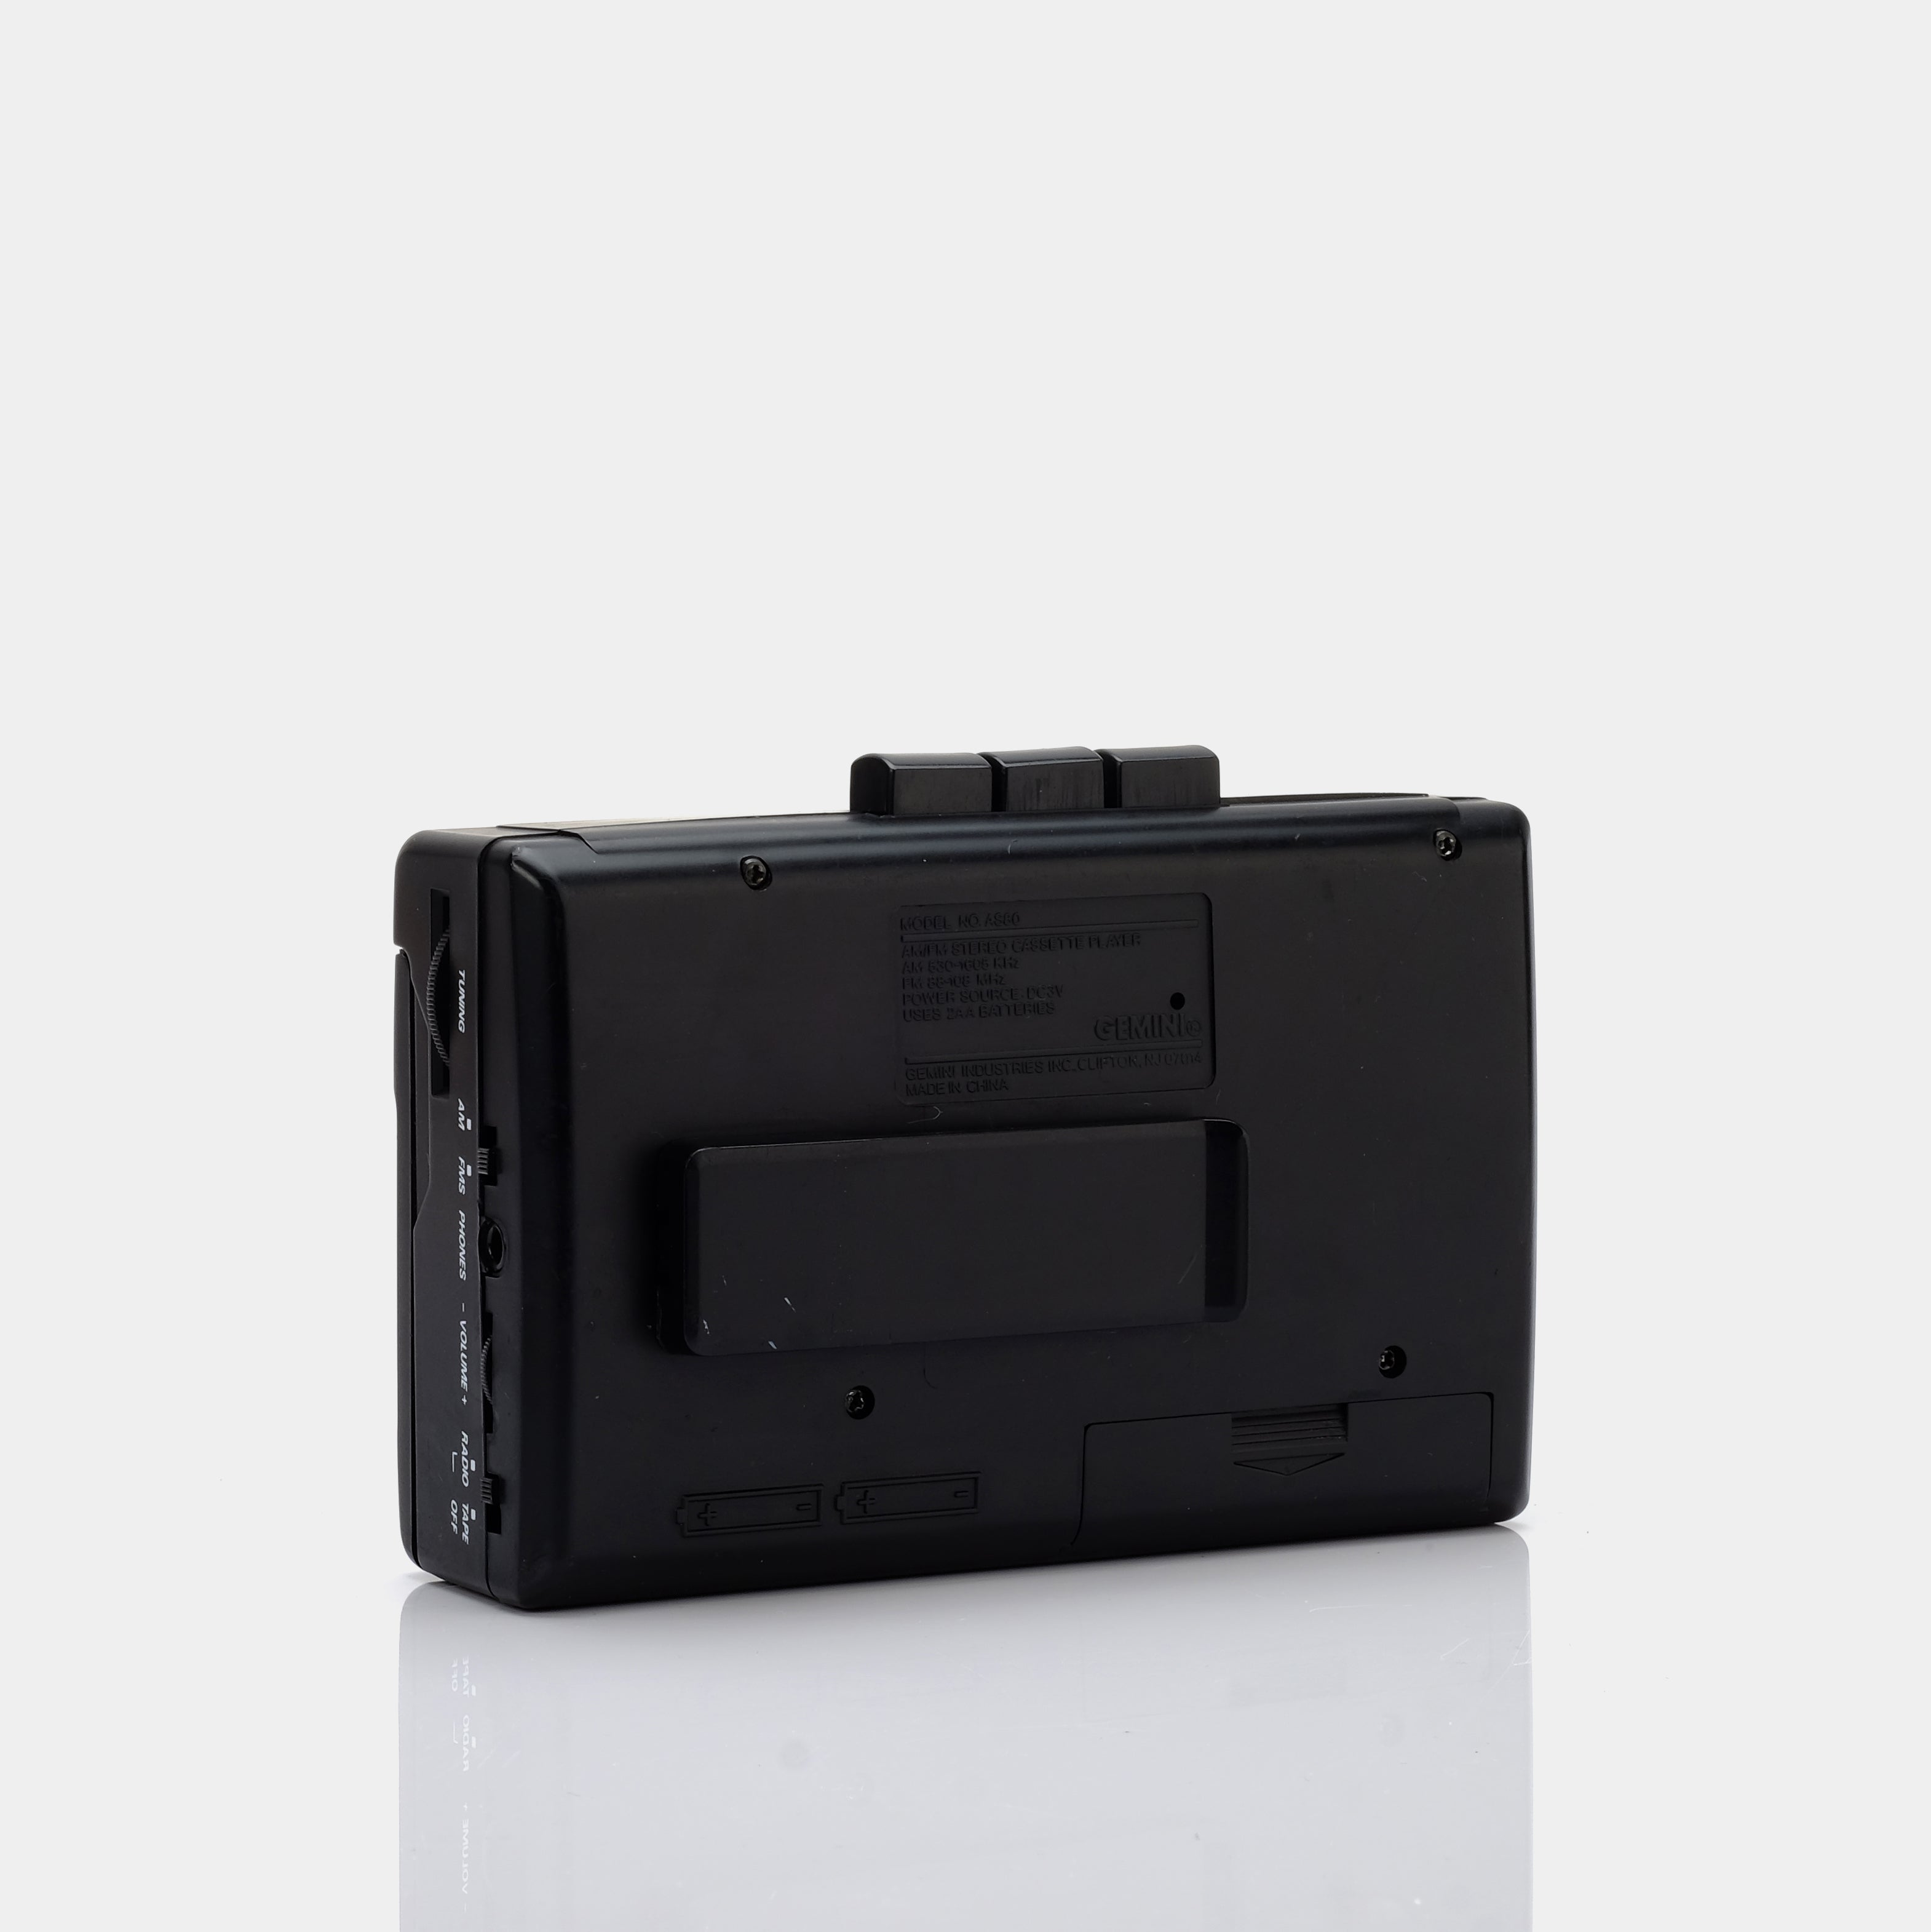 Gemini AS80 AM/FM Portable Cassette Player